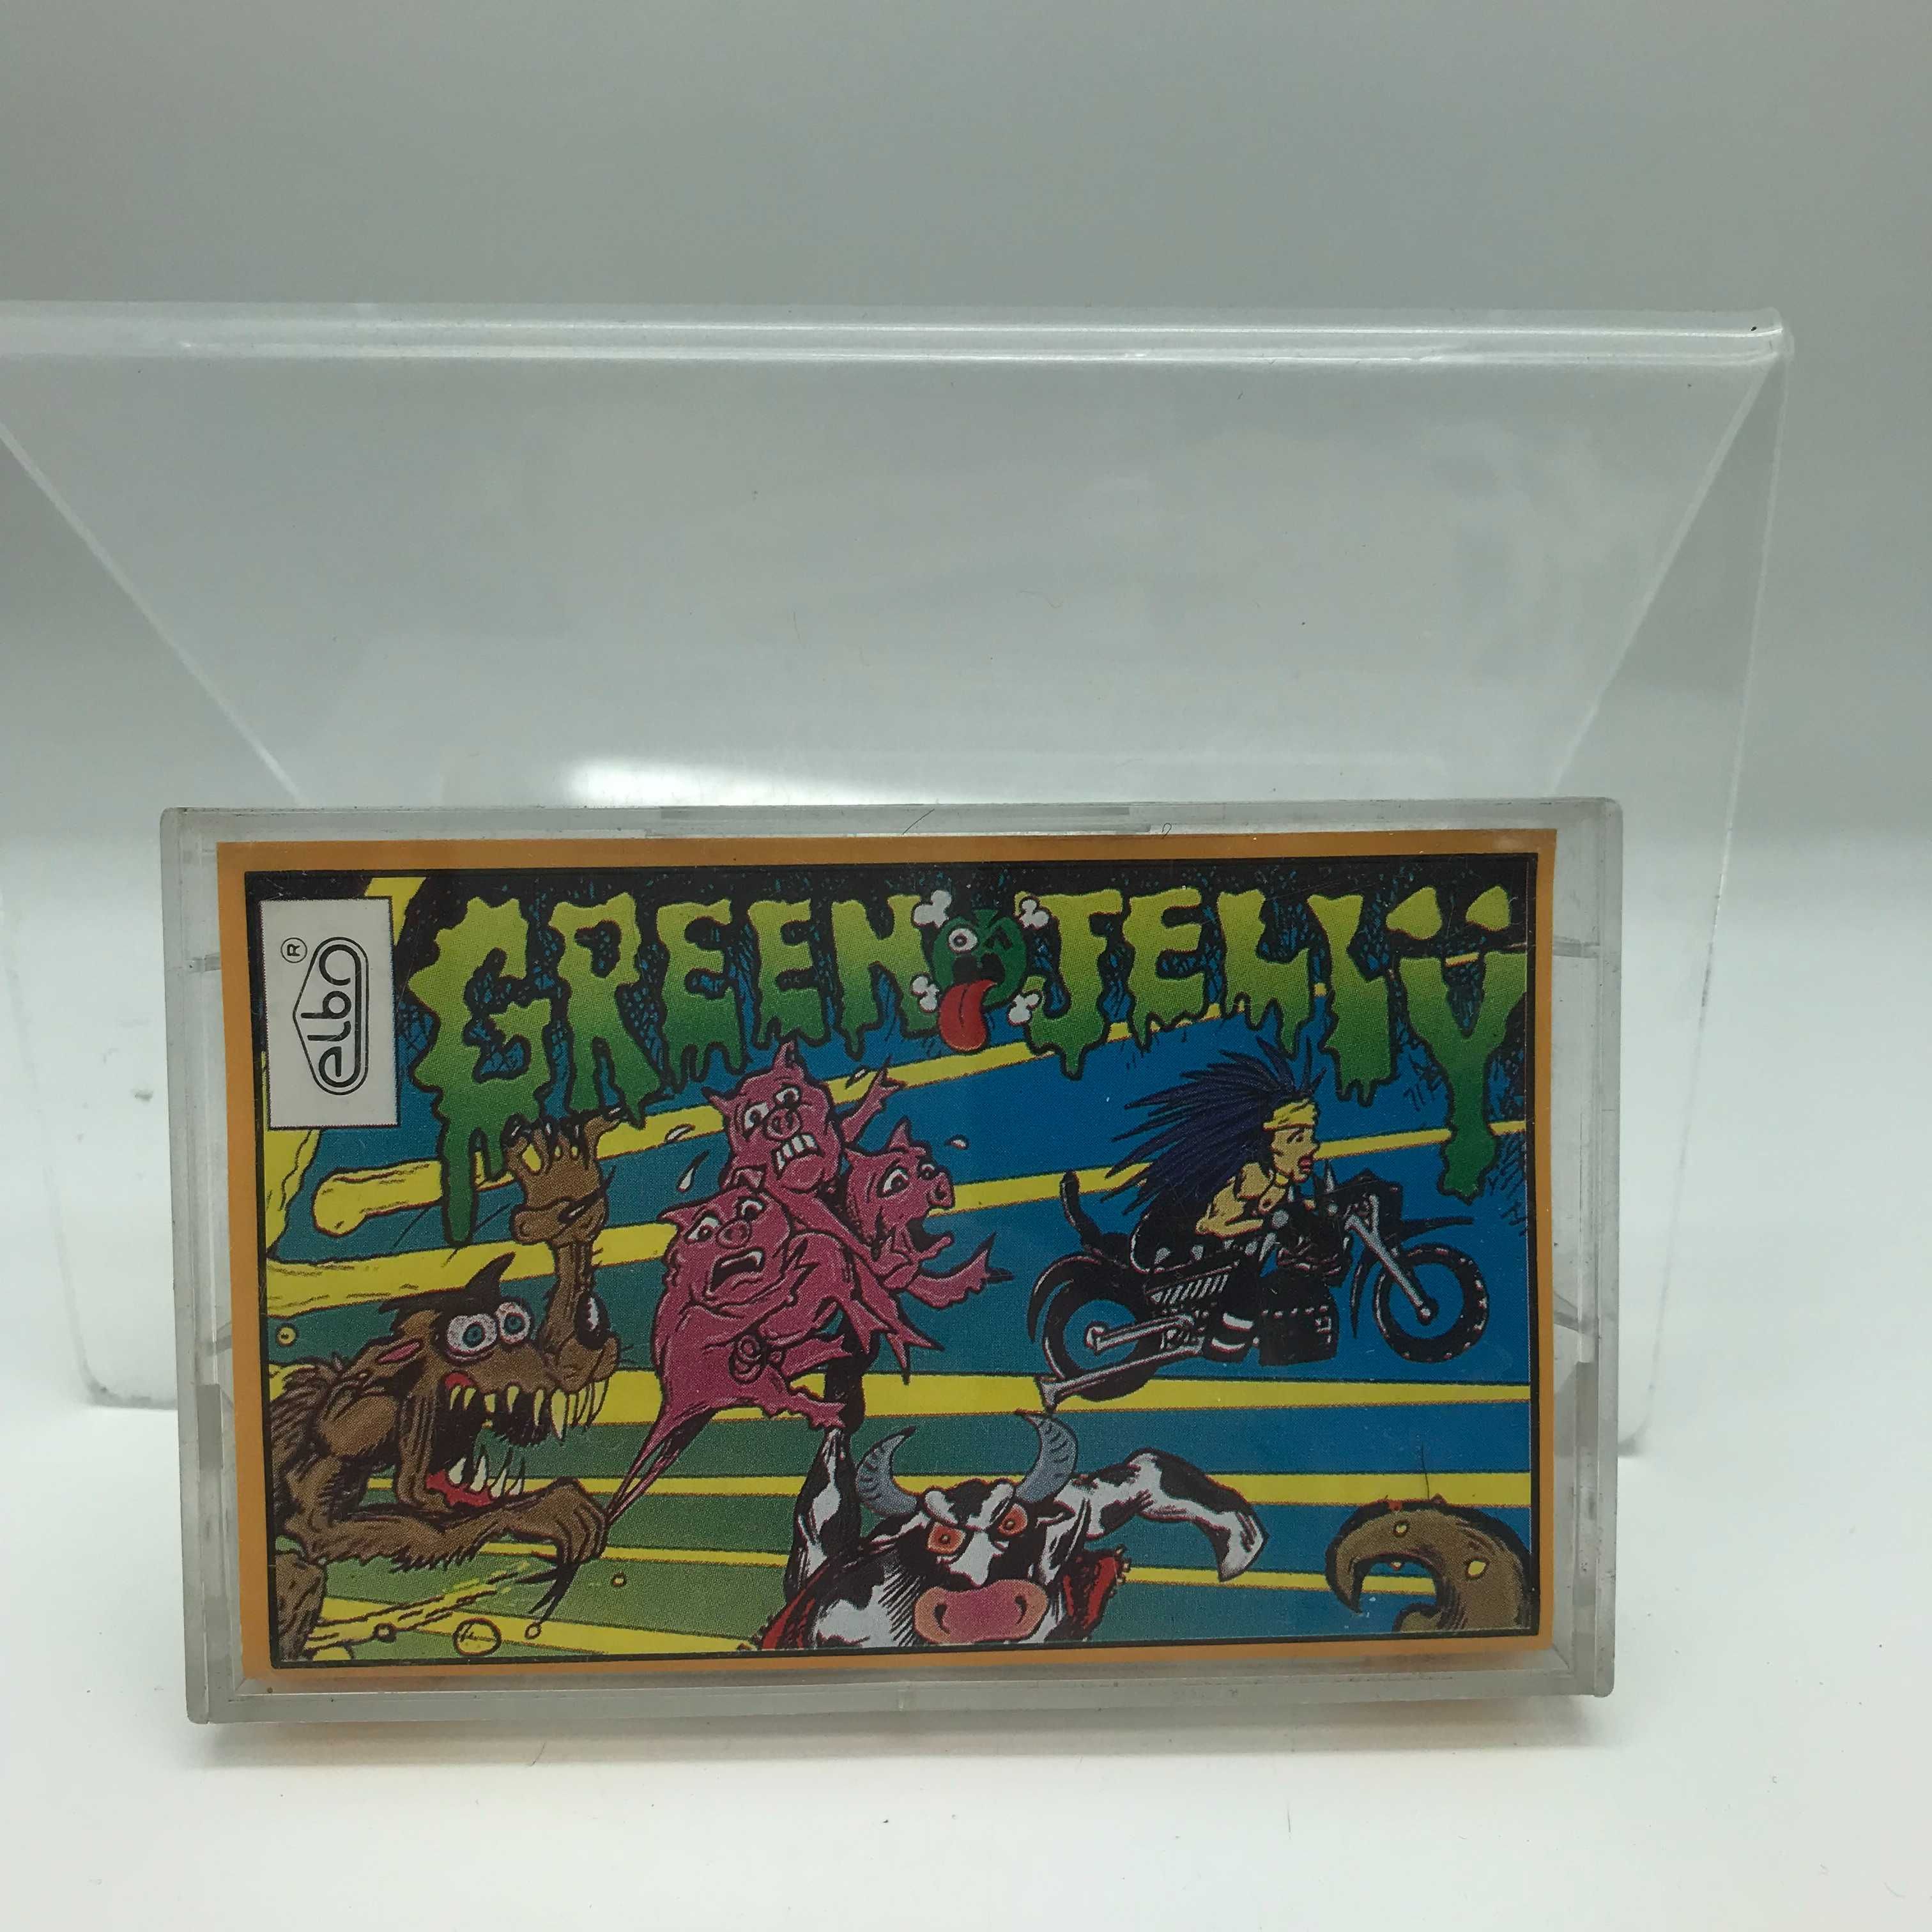 kaseta green jelly - green jelly (1857)